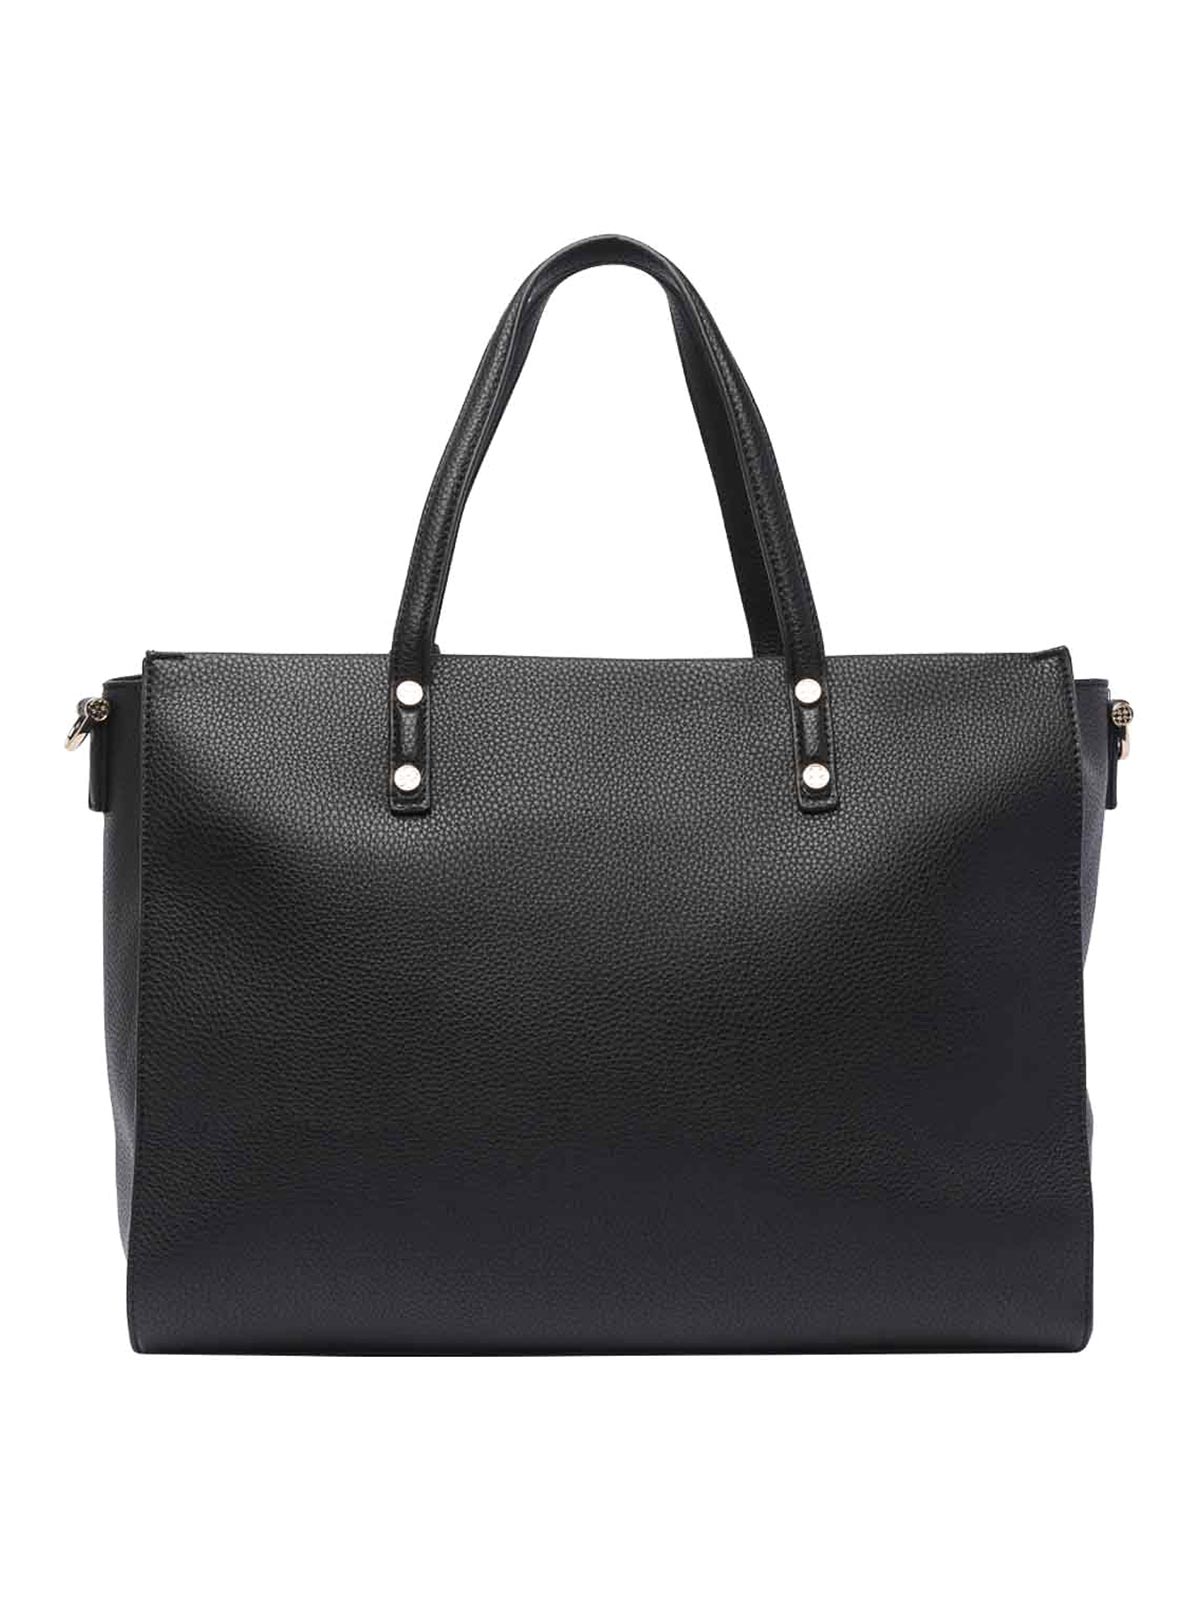 Shop V73 Elara Shopping Bag In Black